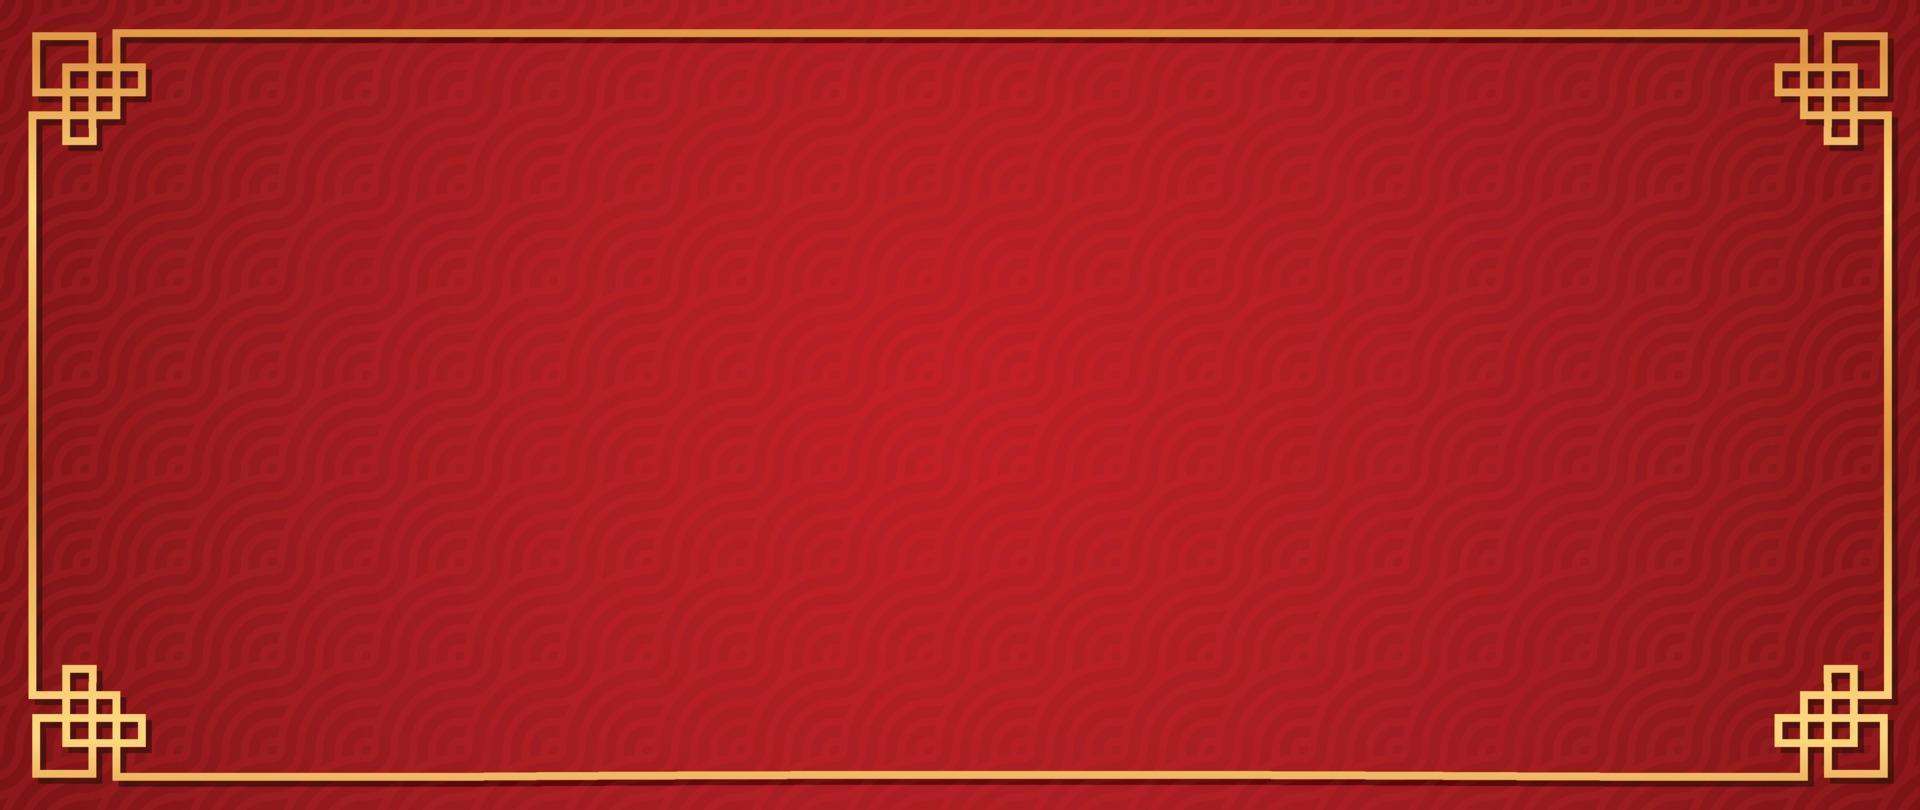 feliz año nuevo chino vector de fondo rojo. patrón tradicional chino y japonés con formas geométricas, marco dorado. papel tapiz de estilo oriental para impresión, tela, cubierta, pancarta, decoración.